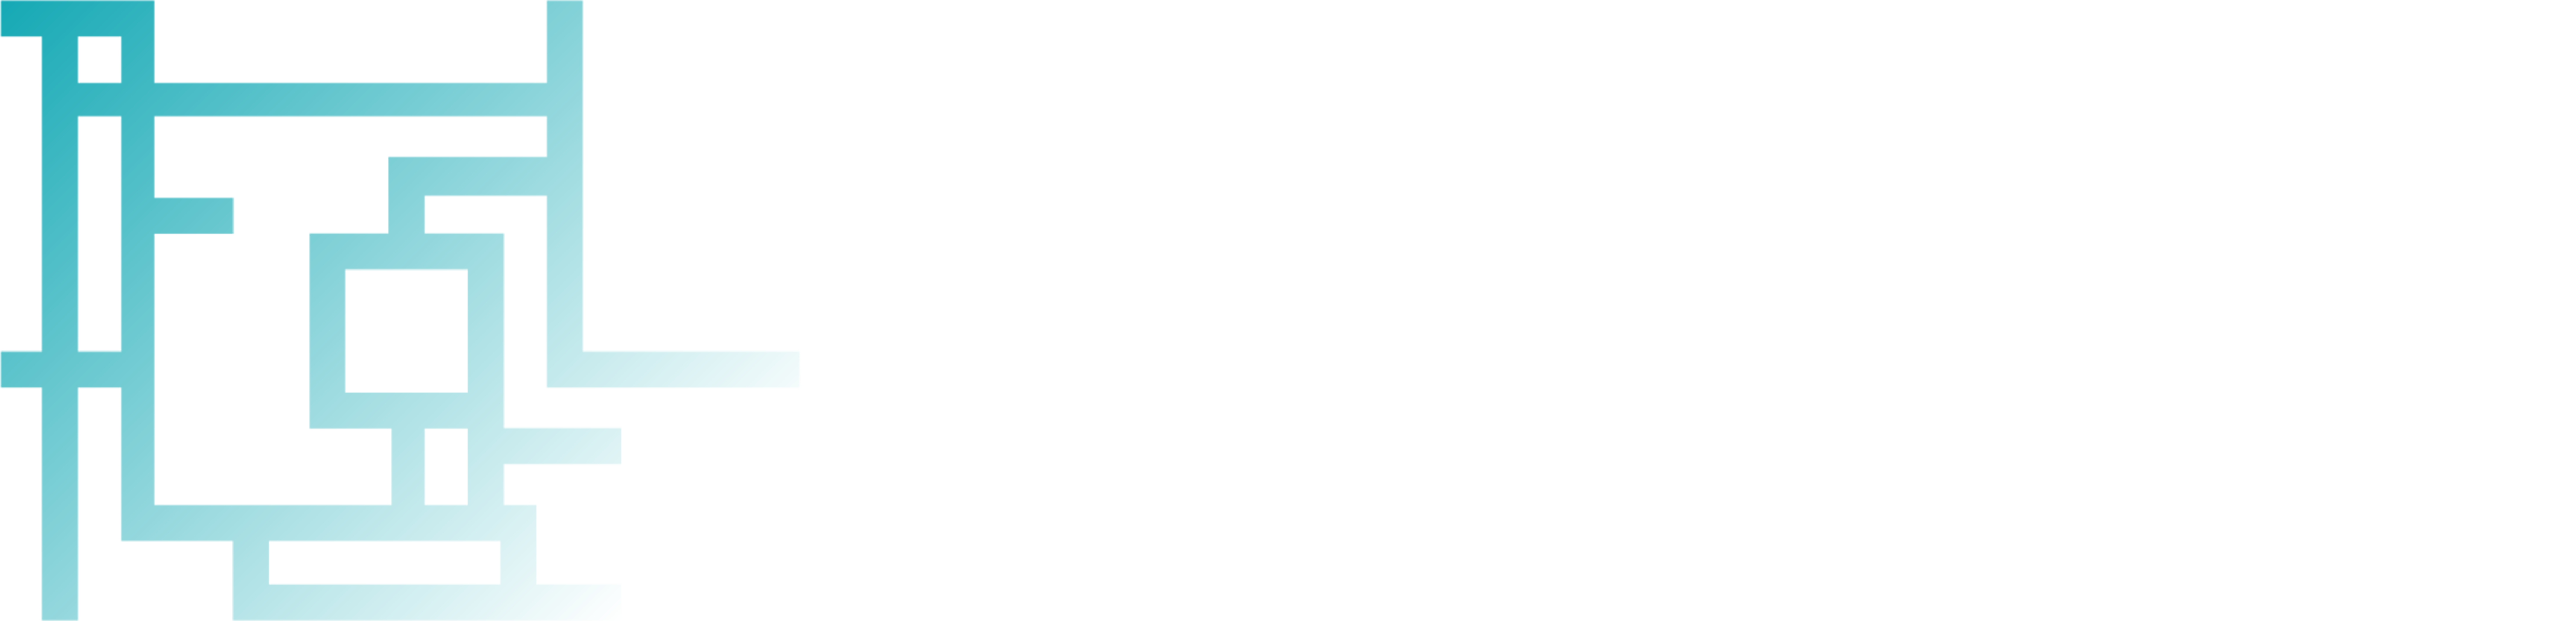 ReLoAd Icon und Logo